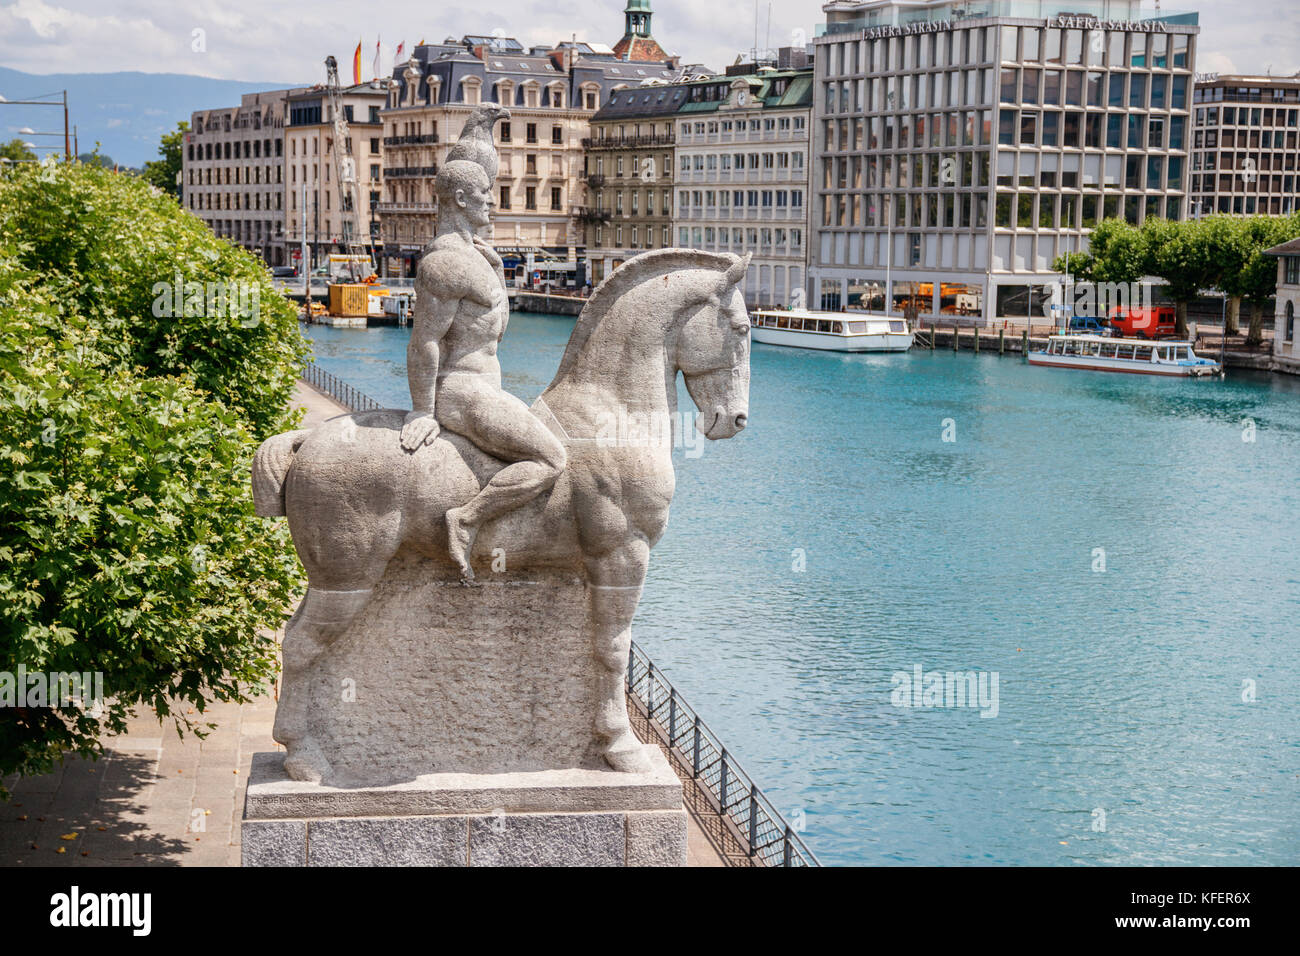 La statua "Aigle de Geneve' (aquila di Ginevra) al Quai Turrettini con il fiume Rodano in background in una giornata di sole. Ginevra, Svizzera. Foto Stock